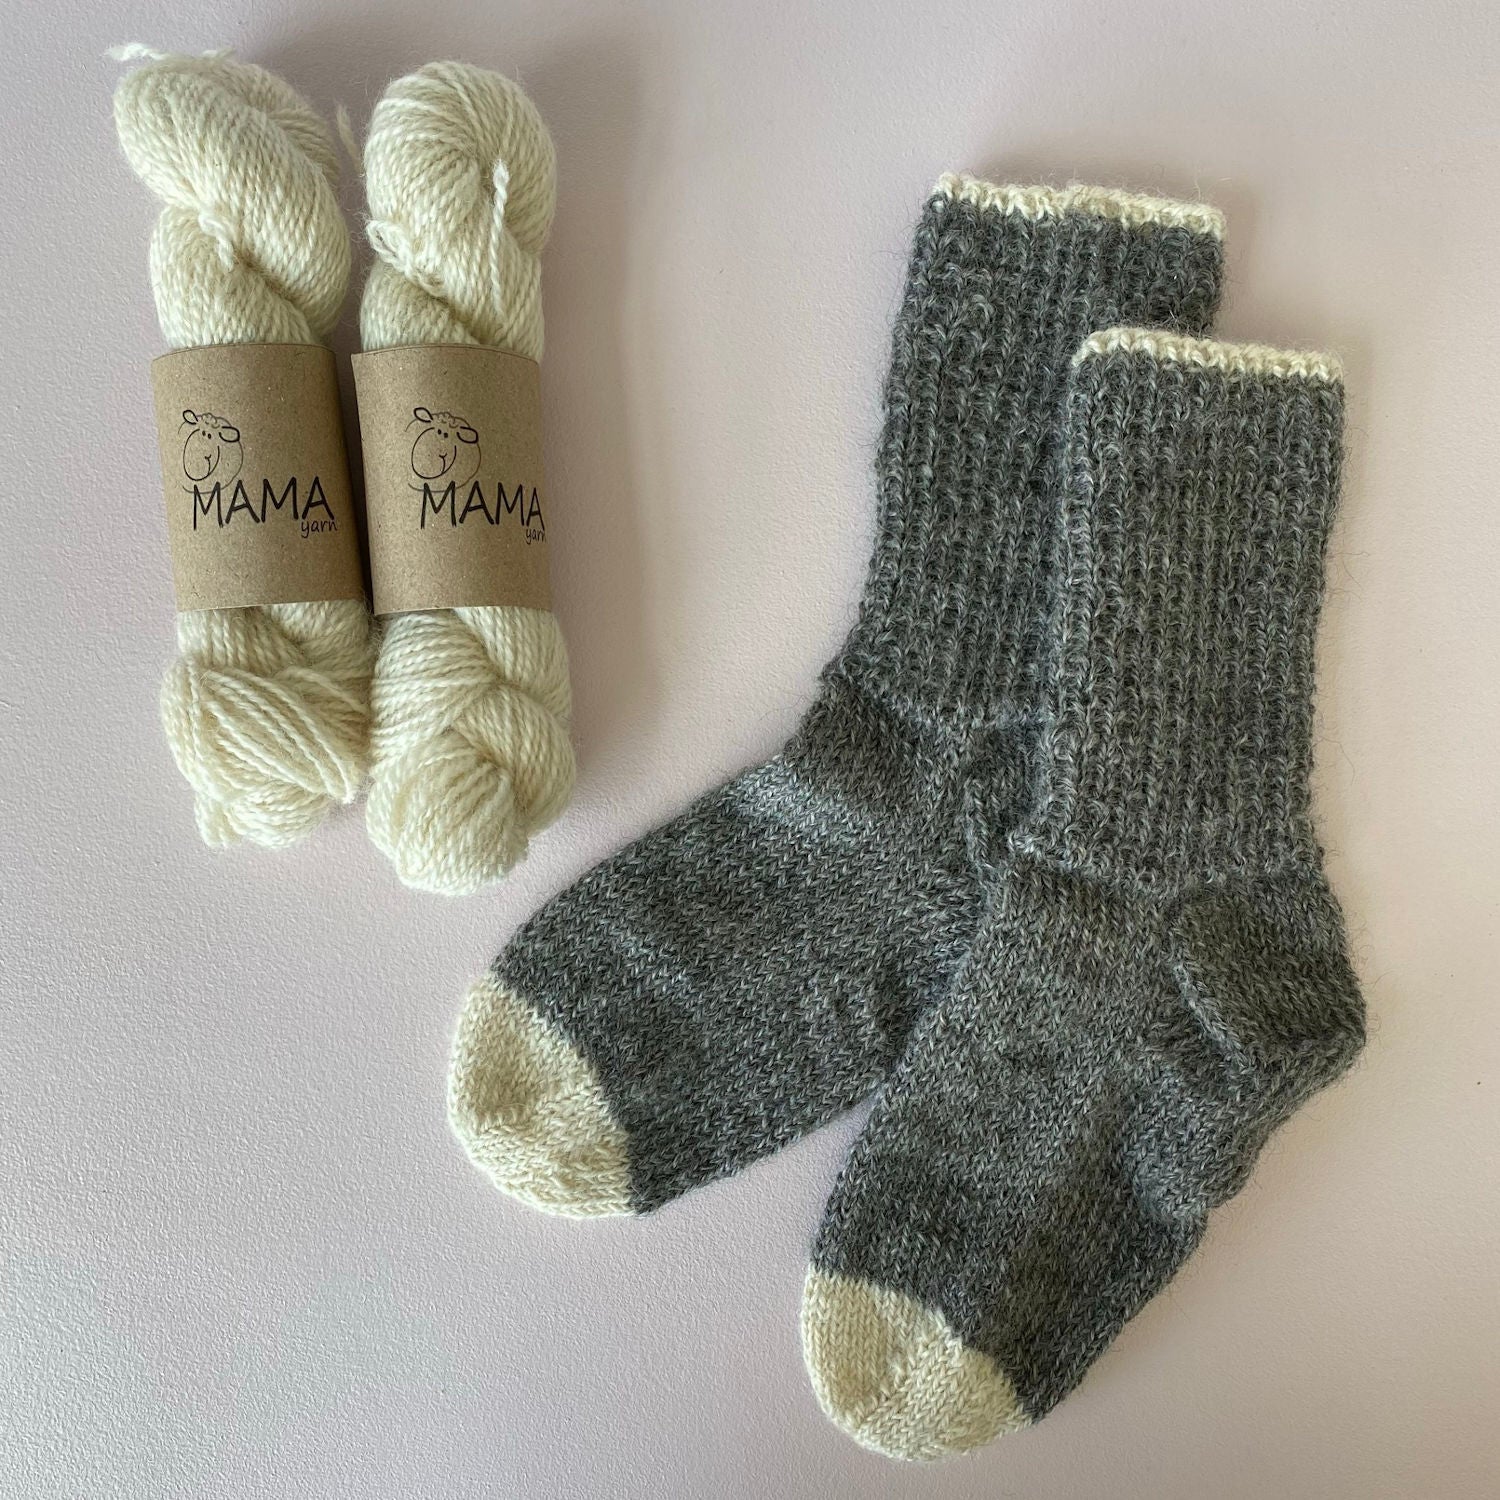 Gotlandsk Begyndersok uden superwash | MAMA yarn – MAMA & uld